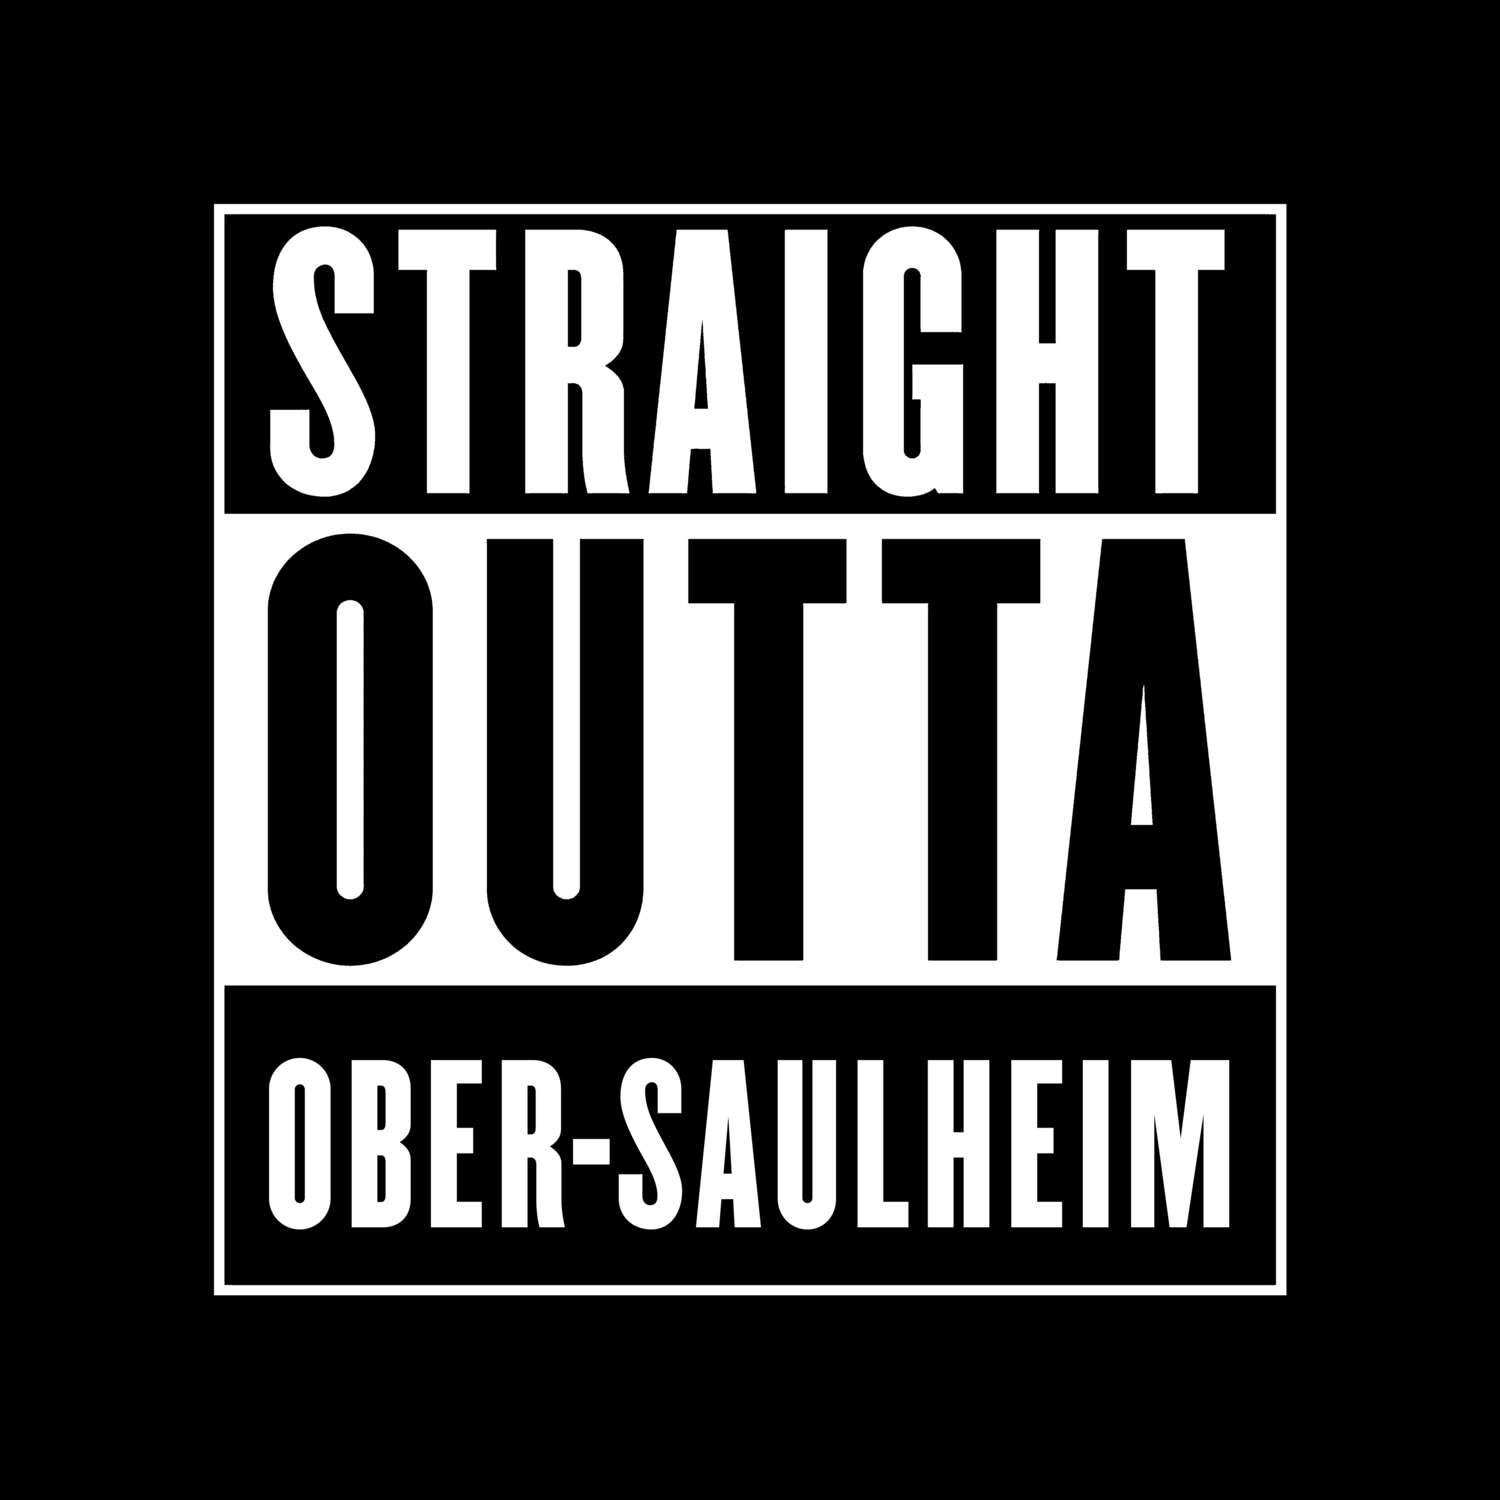 Ober-Saulheim T-Shirt »Straight Outta«